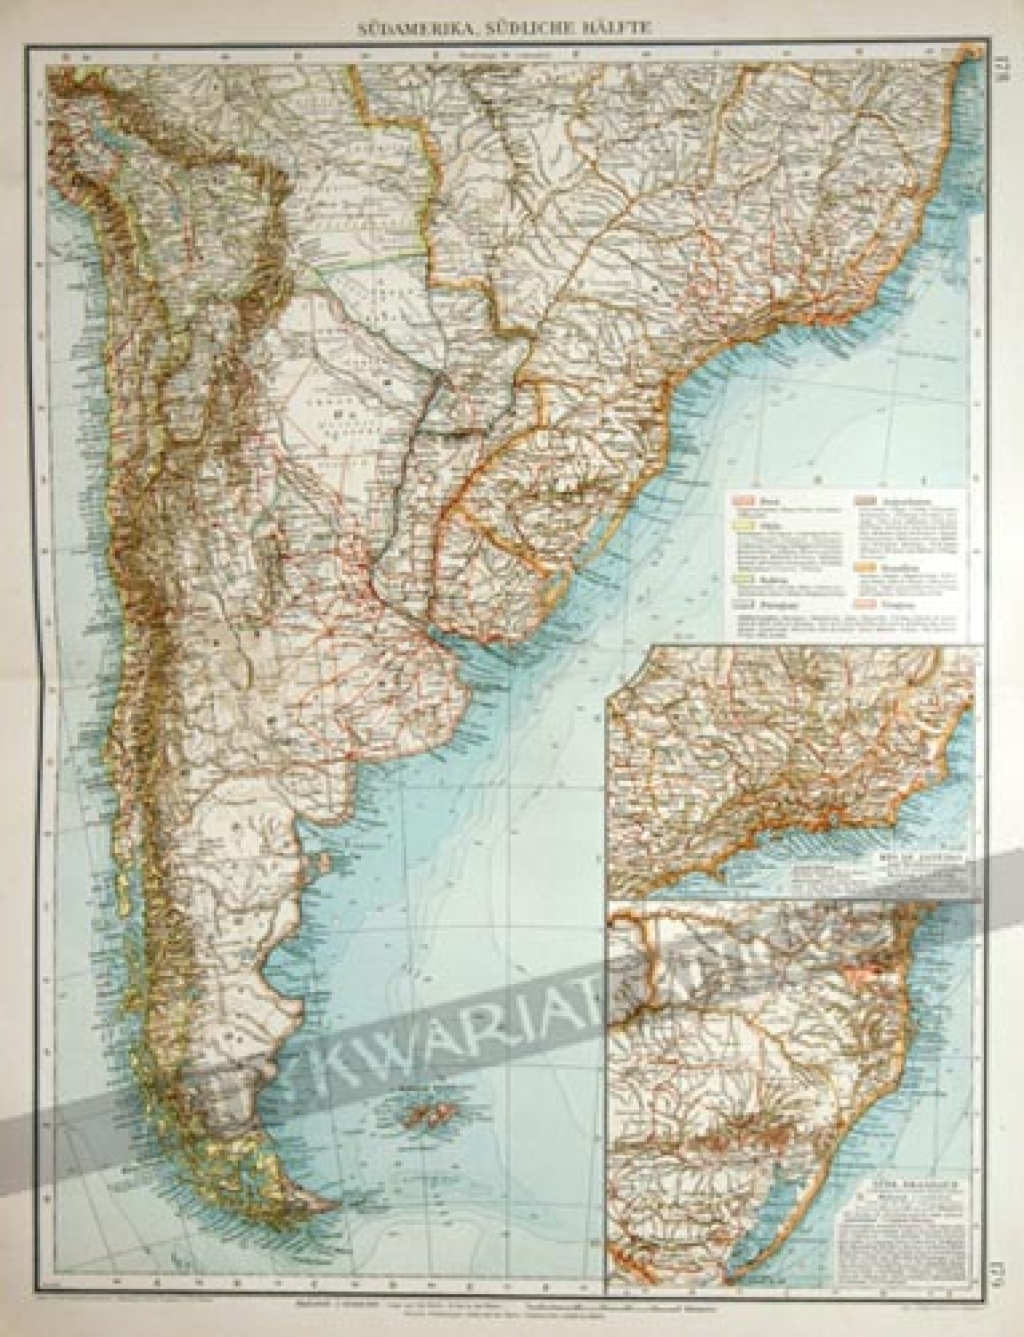 [mapa, 1904] Sudamerica, Sudliche Halfte [Ameryka Południowa, część południowa]